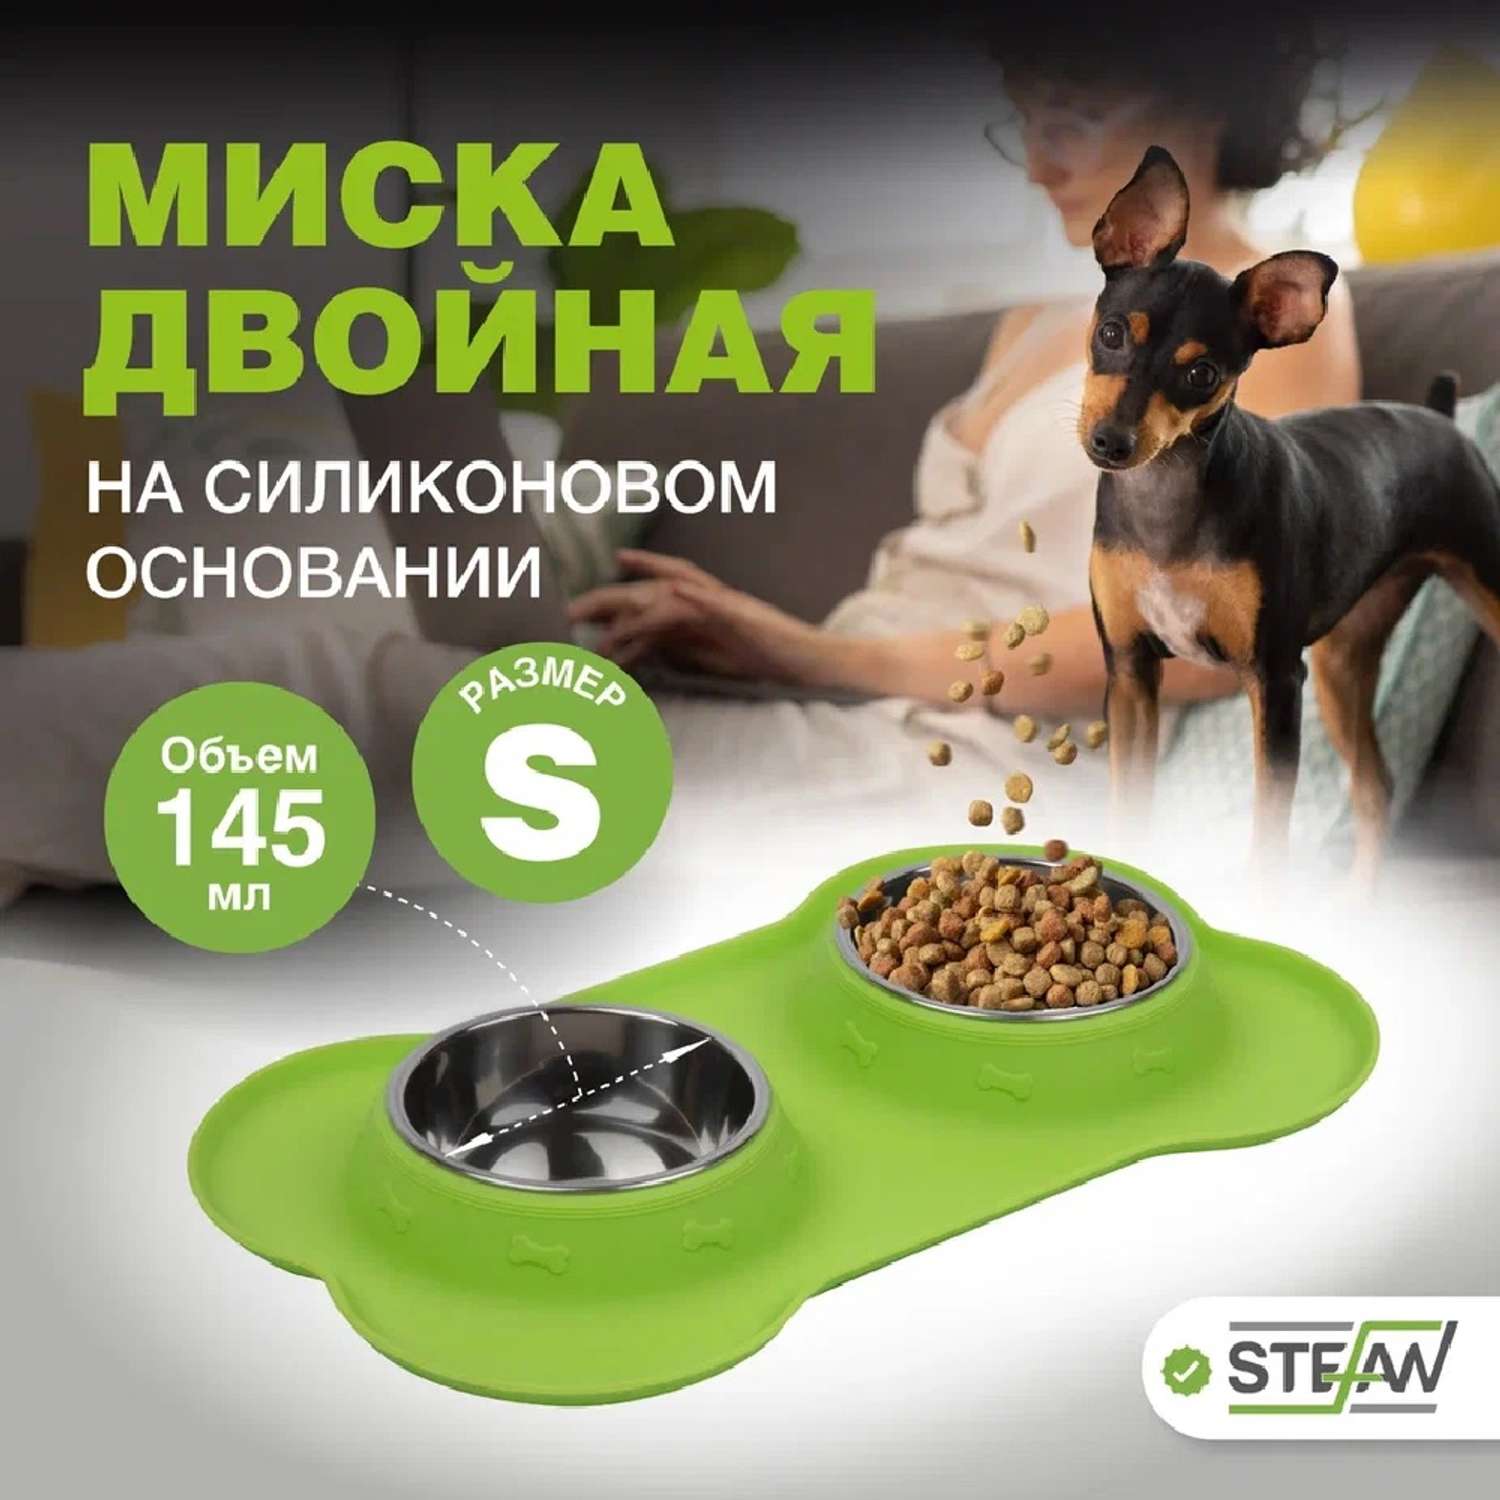 Миска для собак и кошек Stefan двойная с силиконовым основанием размер S 2x145мл - фото 1